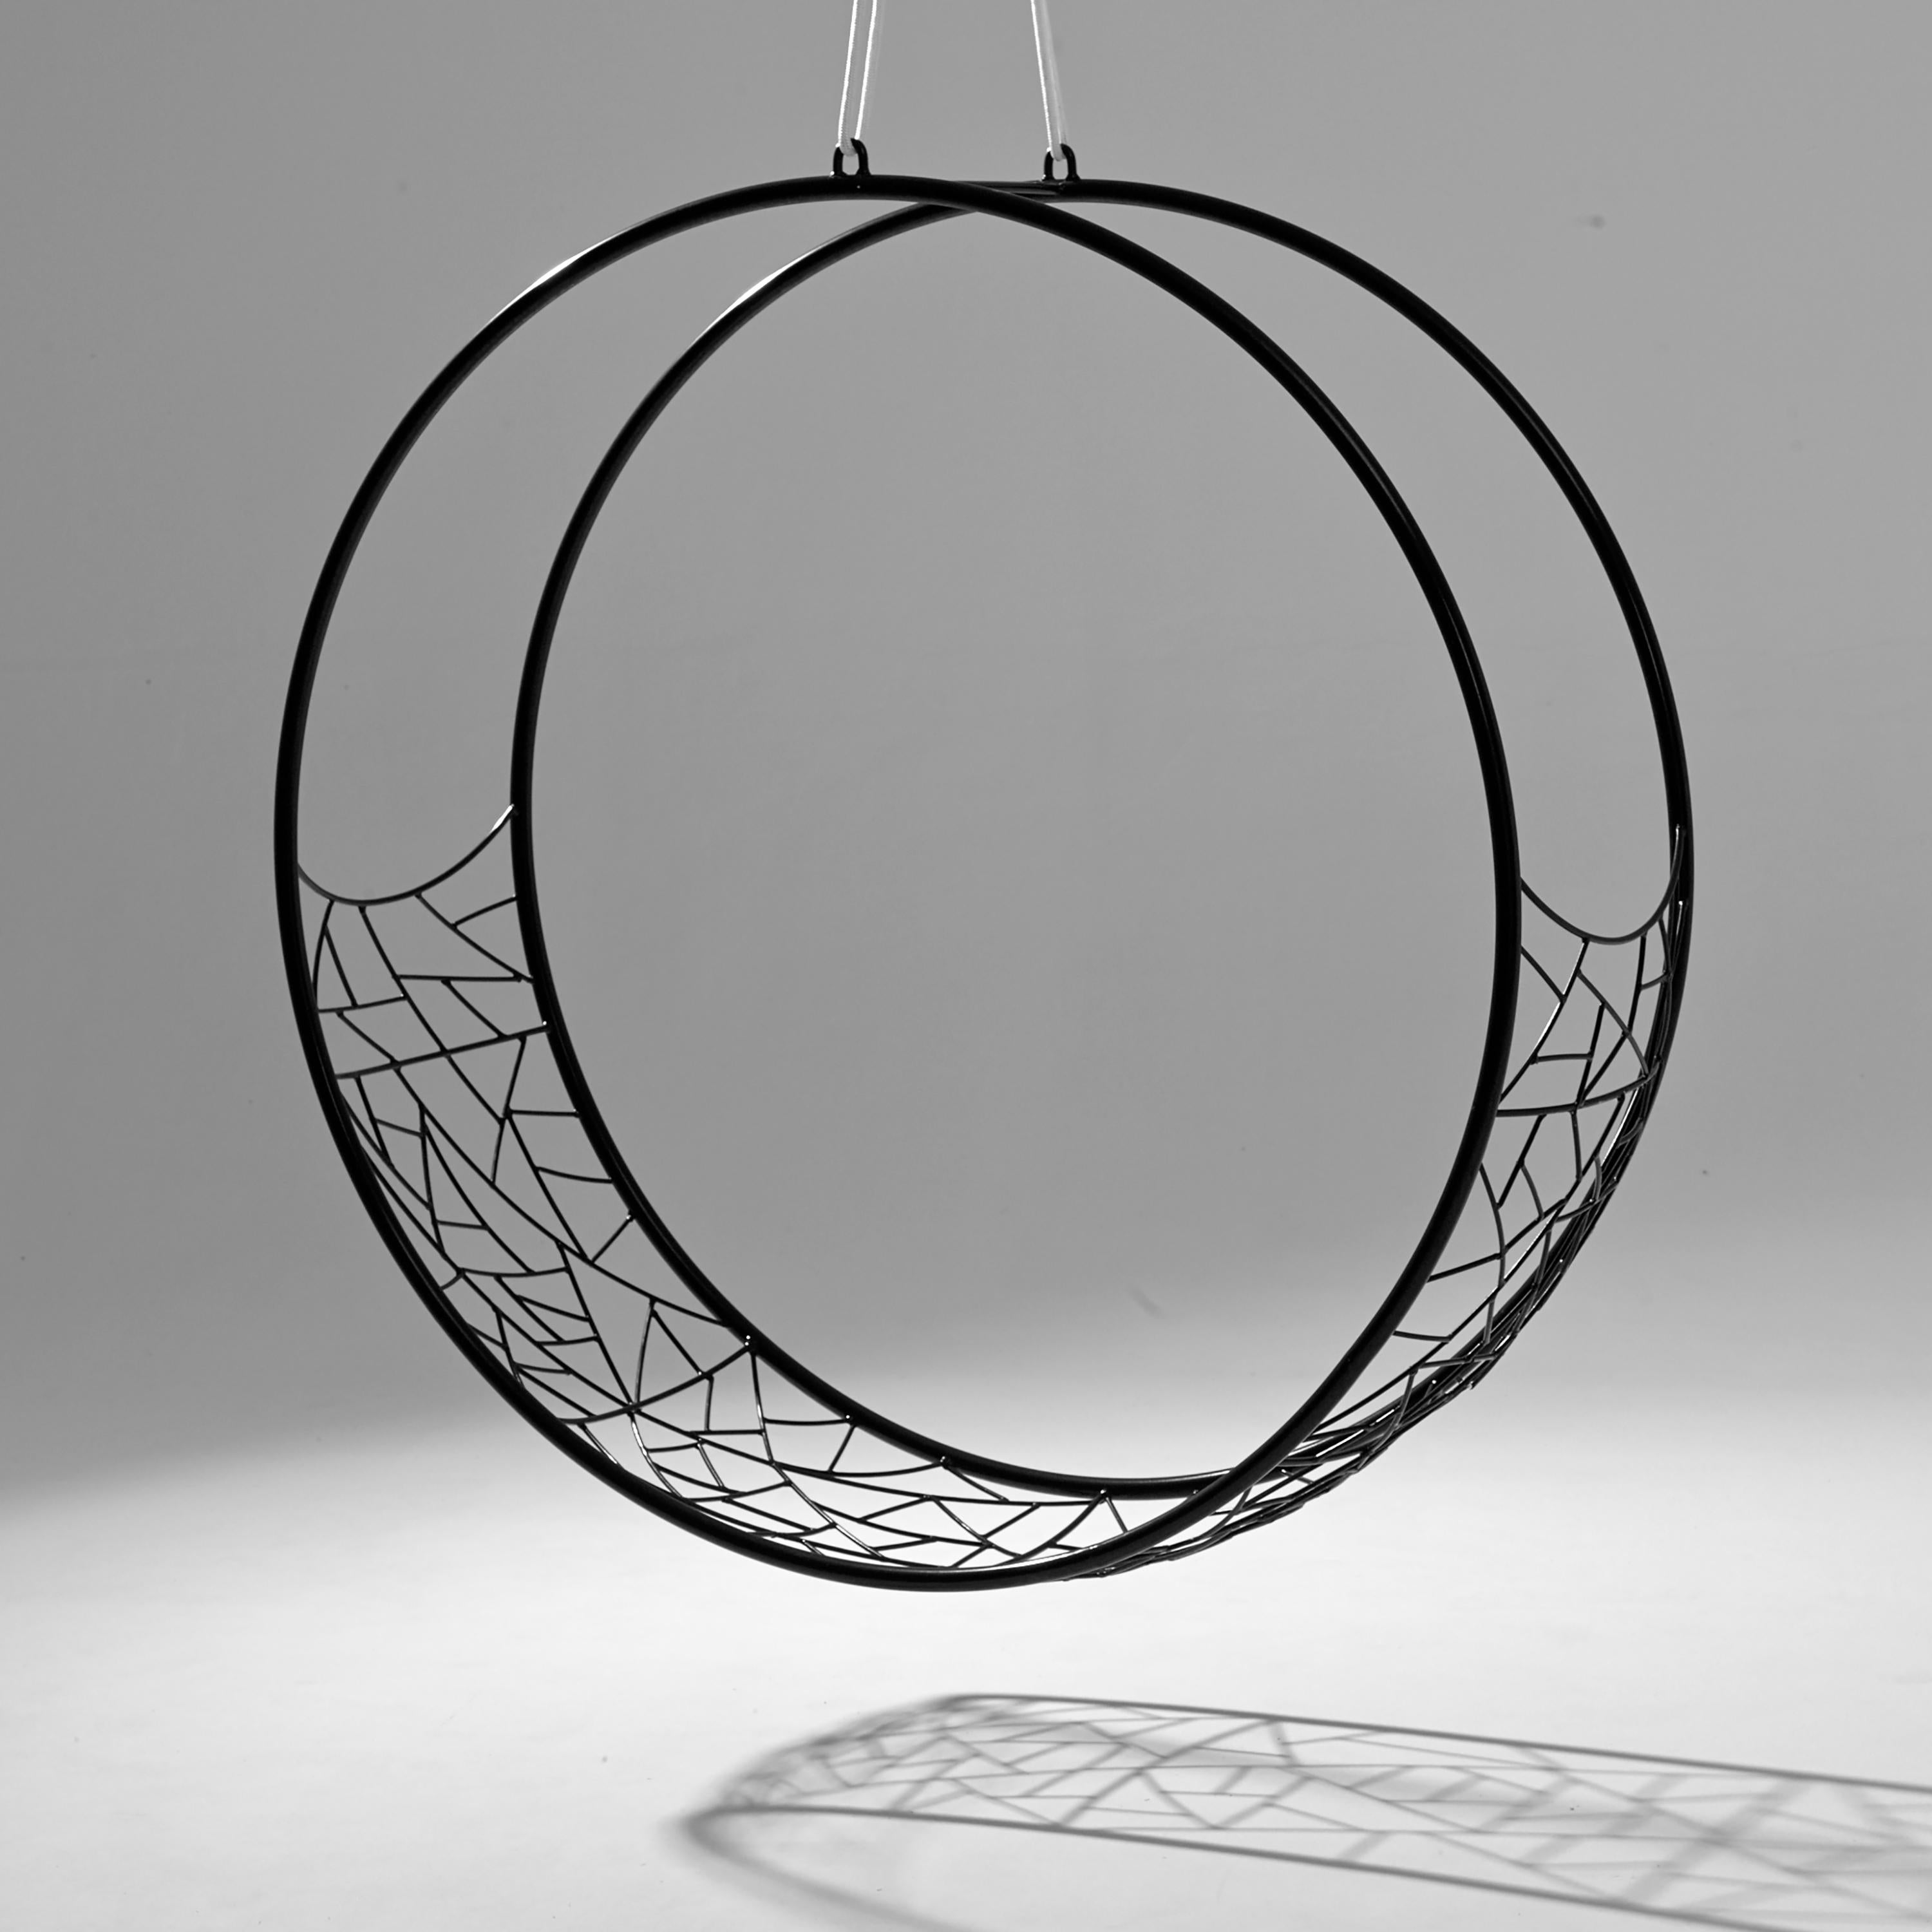 Der WHEEL-Schwingsitz ist skulptural und dynamisch. Seine markante runde Form eignet sich als funktionales Kunstwerk.
Der Stuhl wirkt offen und doch umhüllend. 
Die Musterdetails sind von der Natur inspiriert und erinnern an die Adern in Blättern,